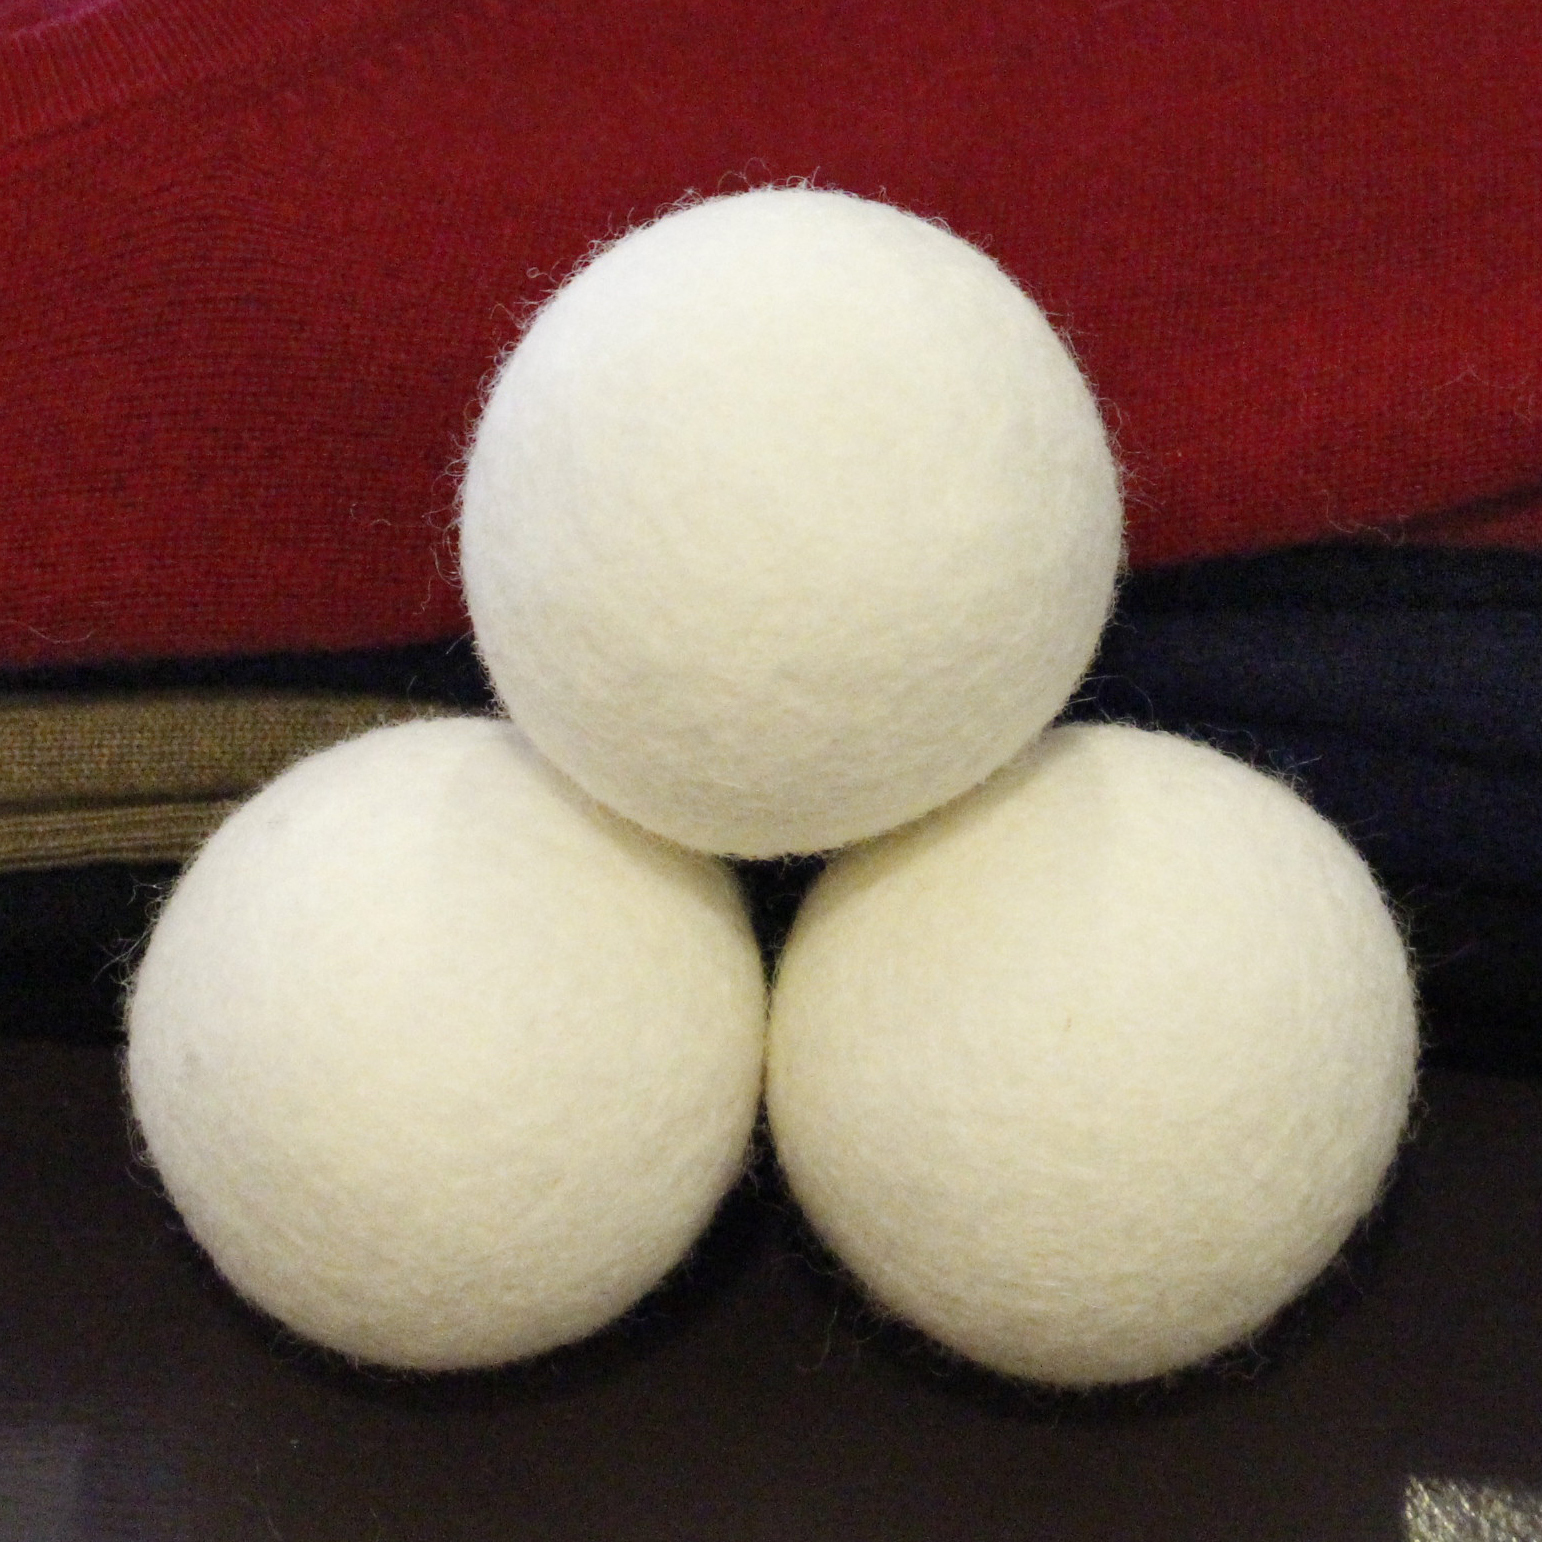 Felt Dryer Ball - White Color